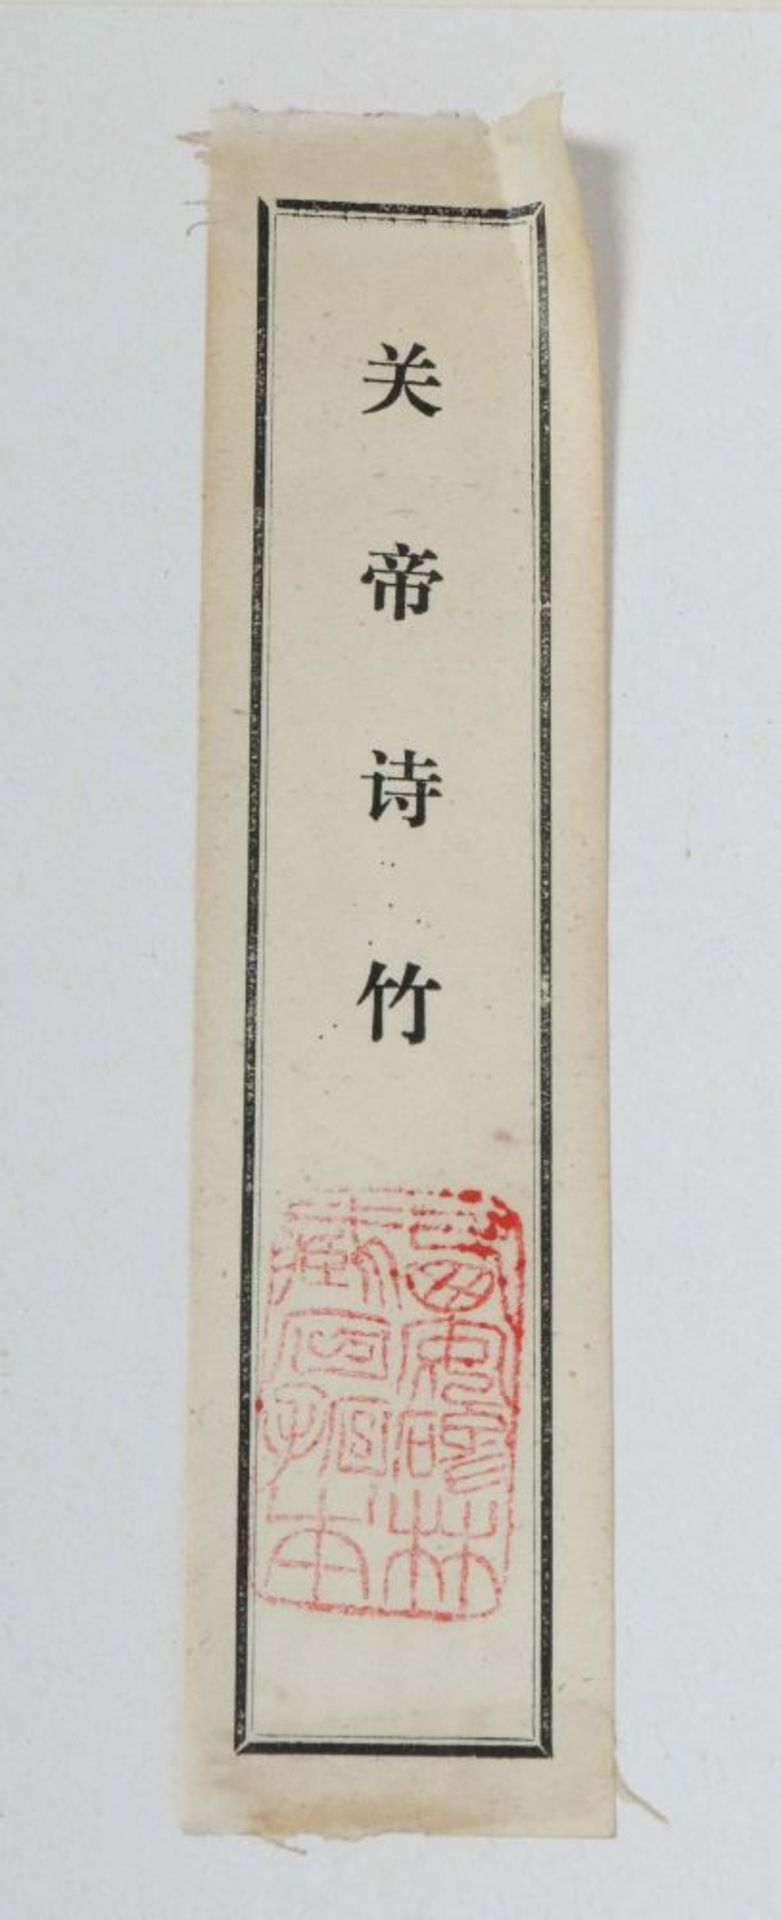 "Guan di shi zhu" Durchrieb auf Papier - Image 3 of 3